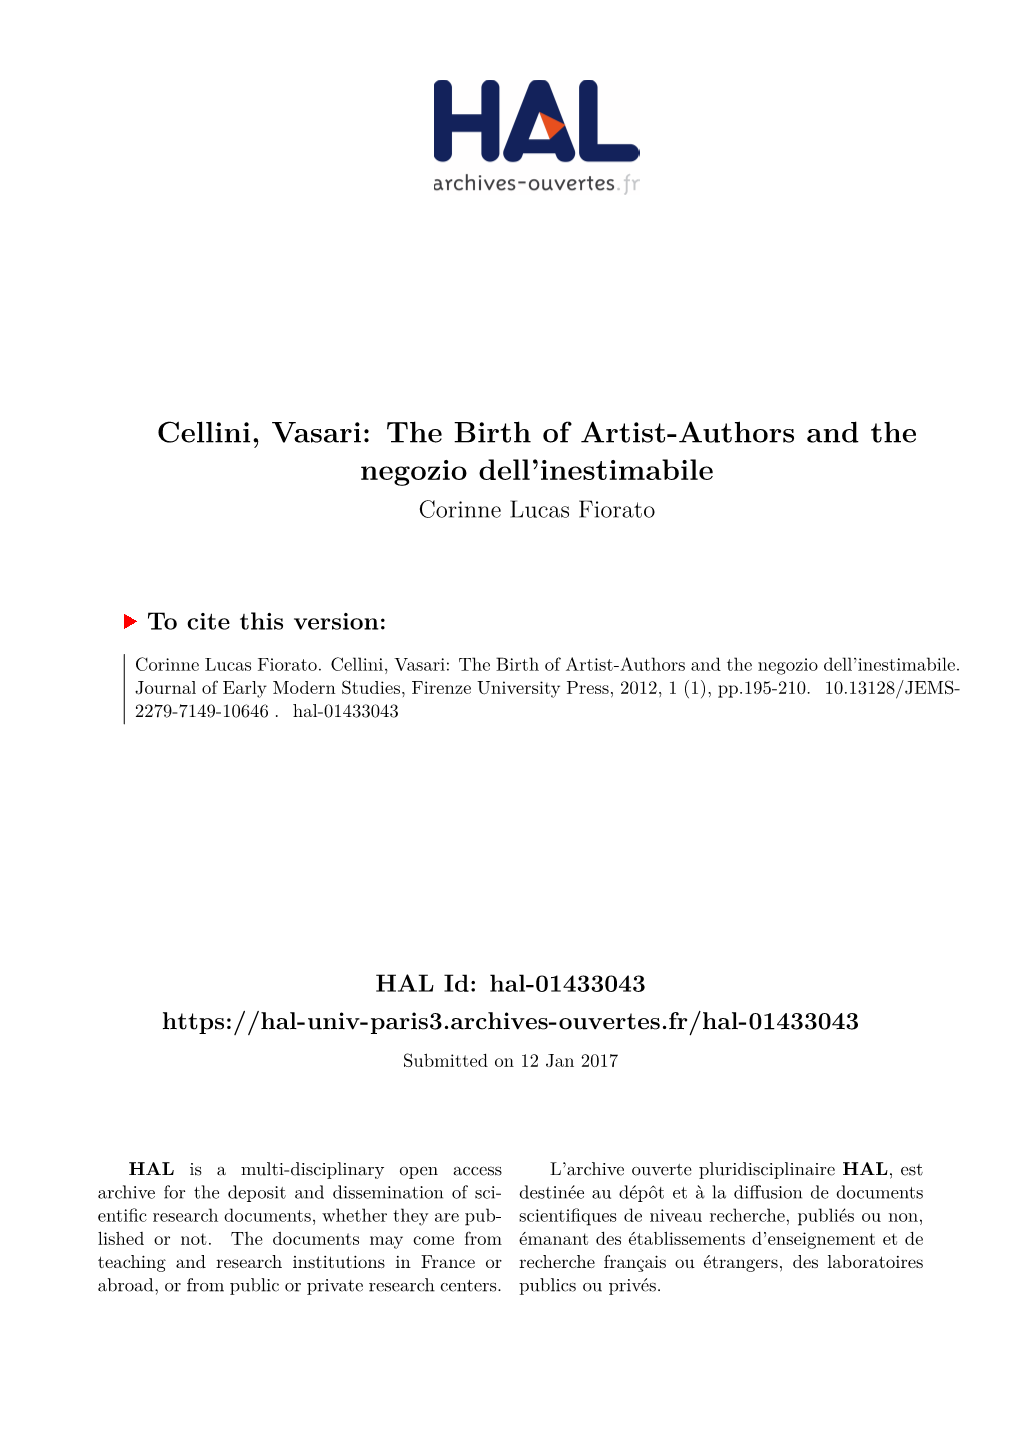 Cellini, Vasari: the Birth of Artist-Authors and the Negozio Dell’Inestimabile Corinne Lucas Fiorato